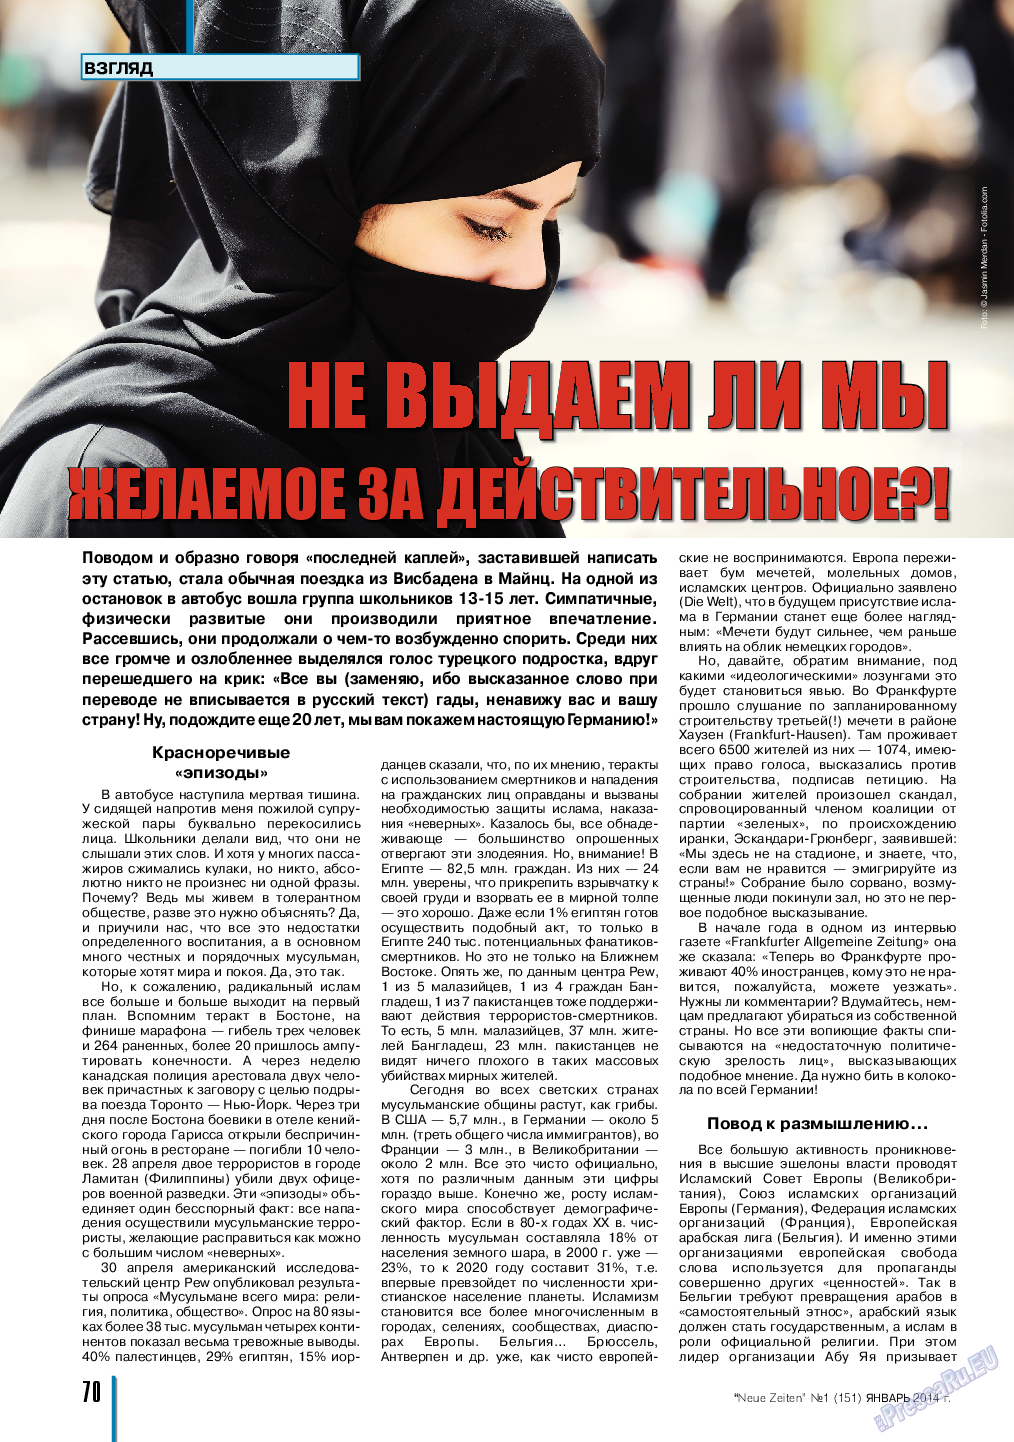 Neue Zeiten, журнал. 2014 №1 стр.70